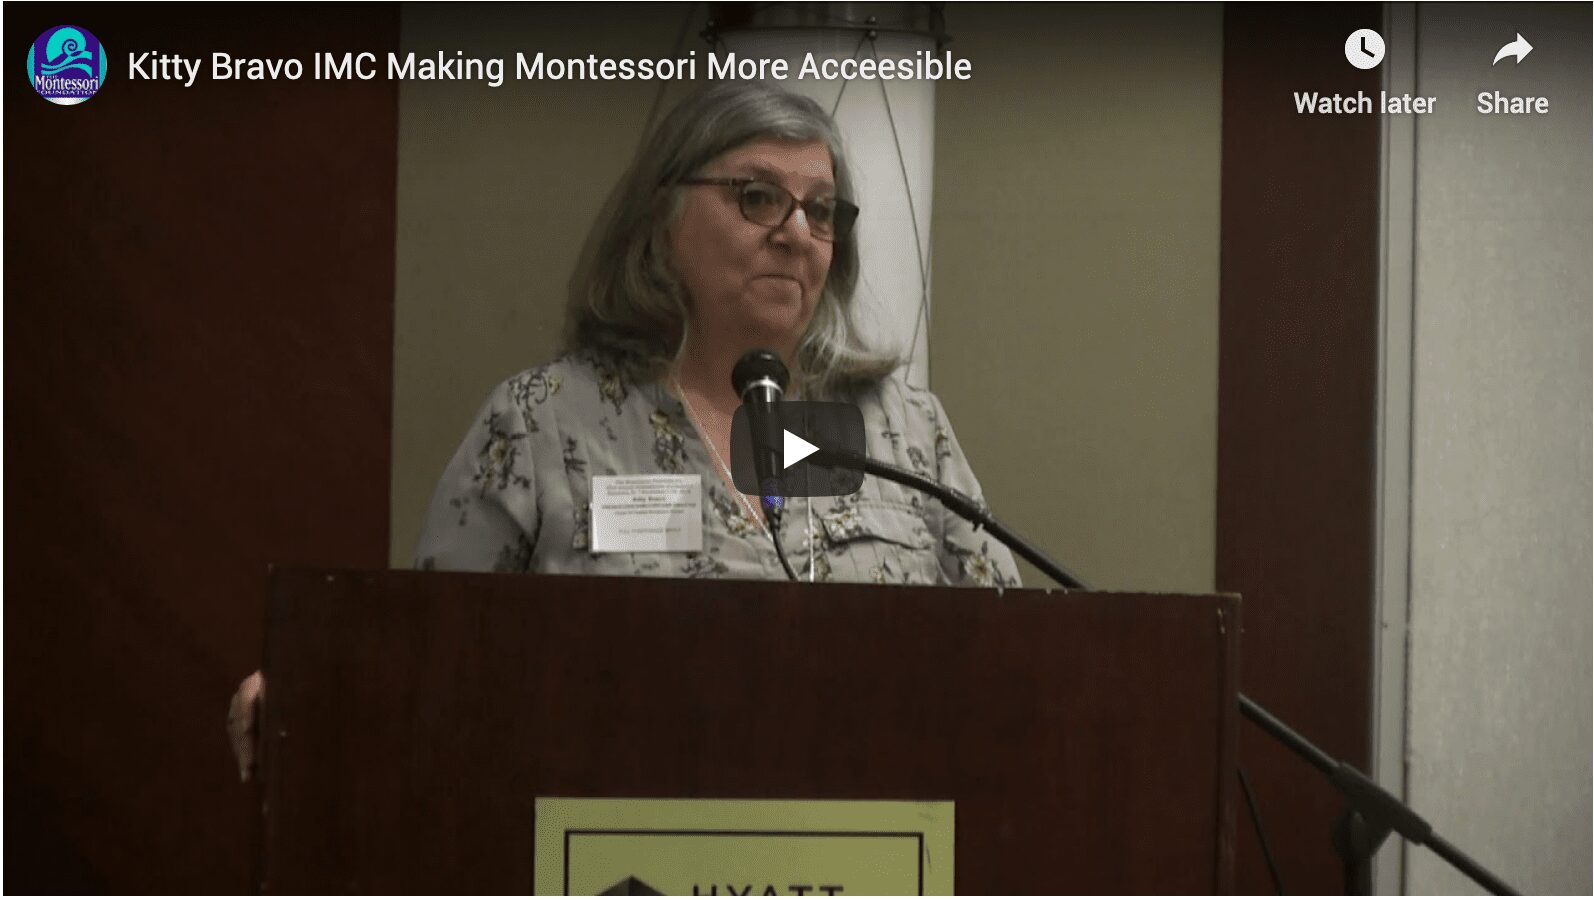 Making montessori more accessible